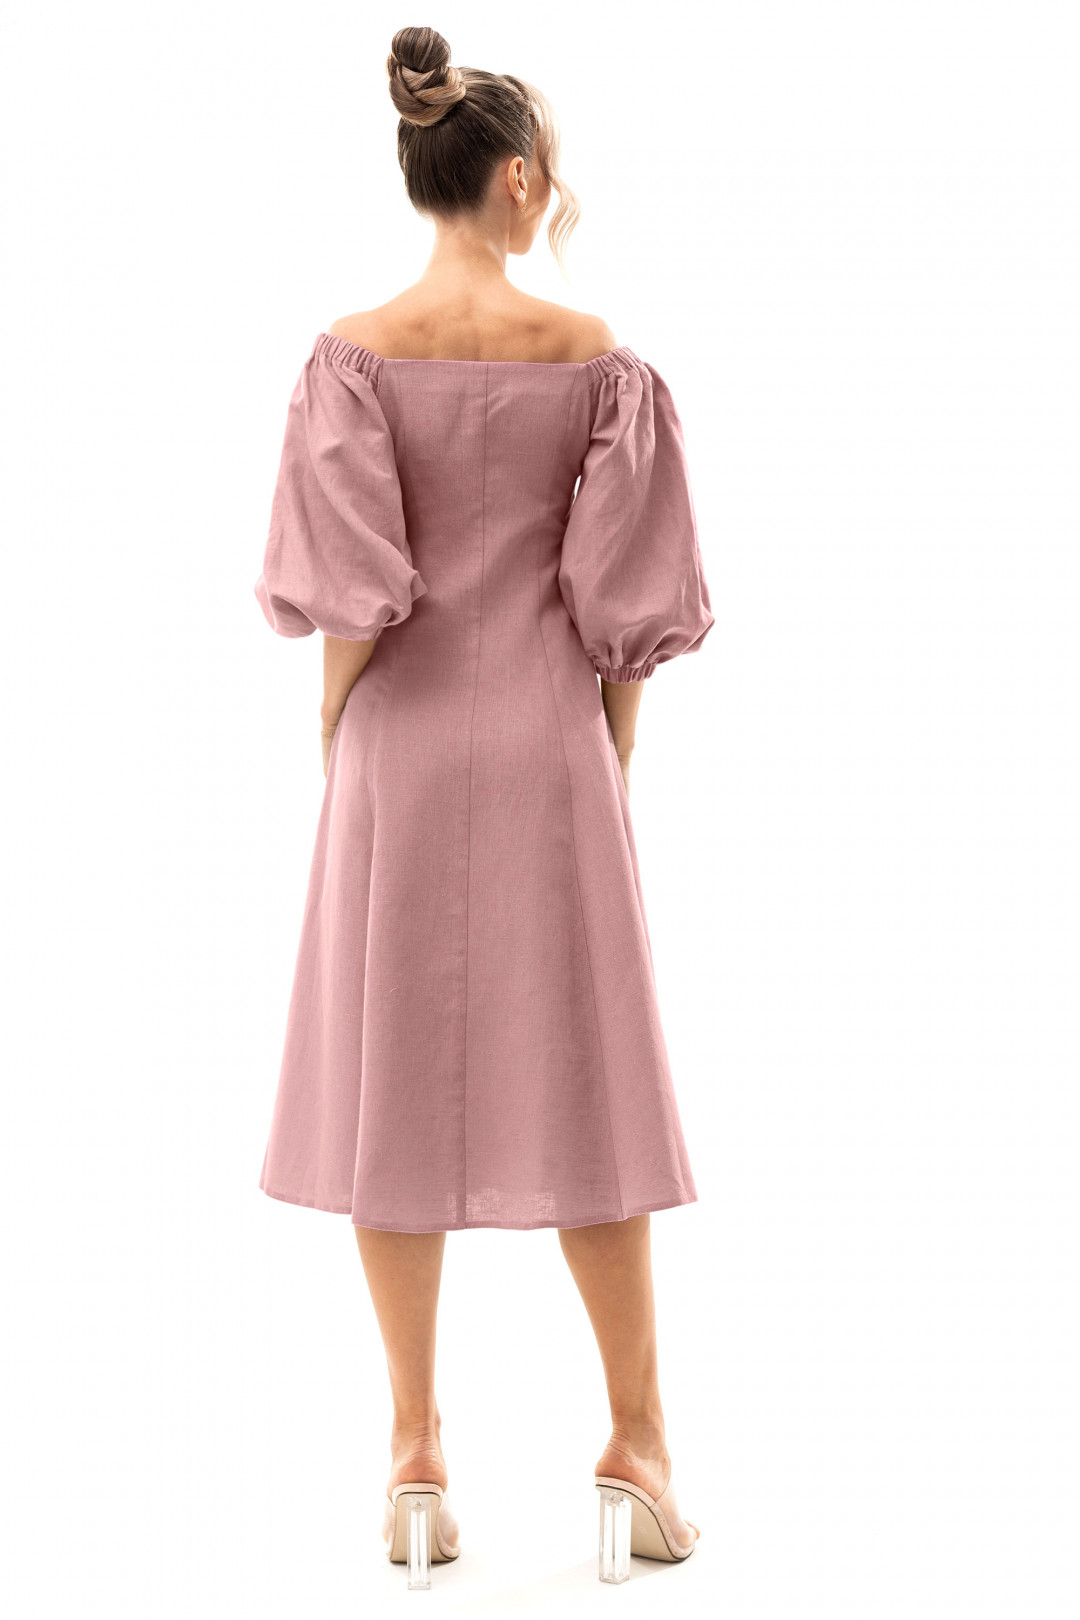 Платье Golden Valley 4902 розовый-1